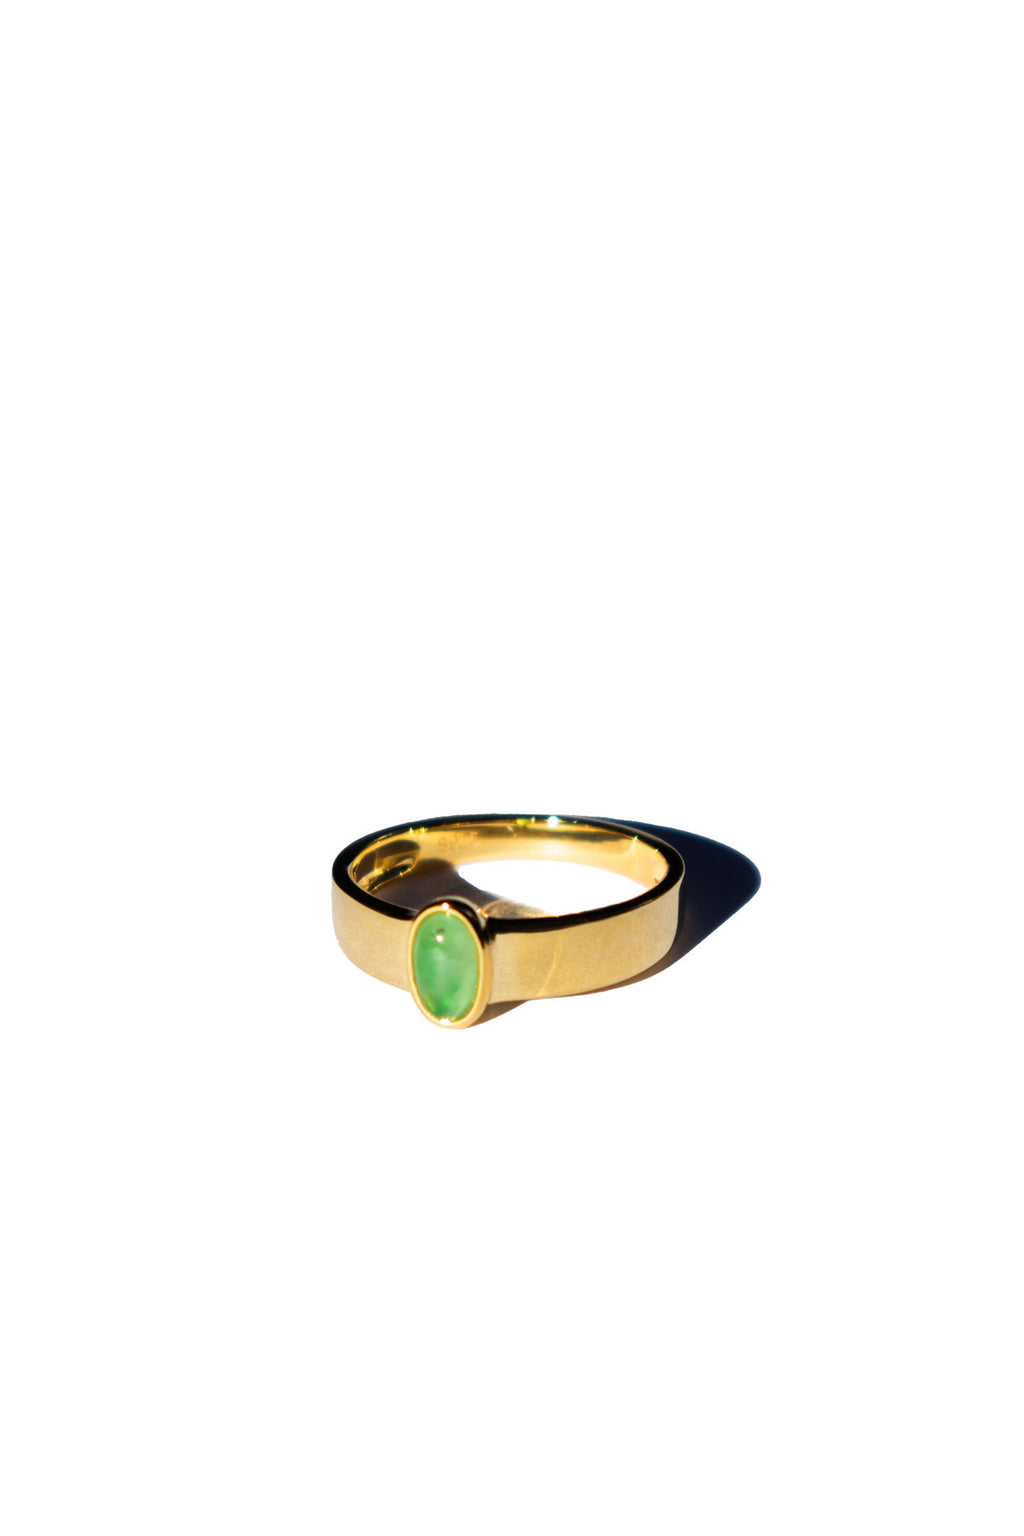 seree-atelier-simone-jadeite-ring-1